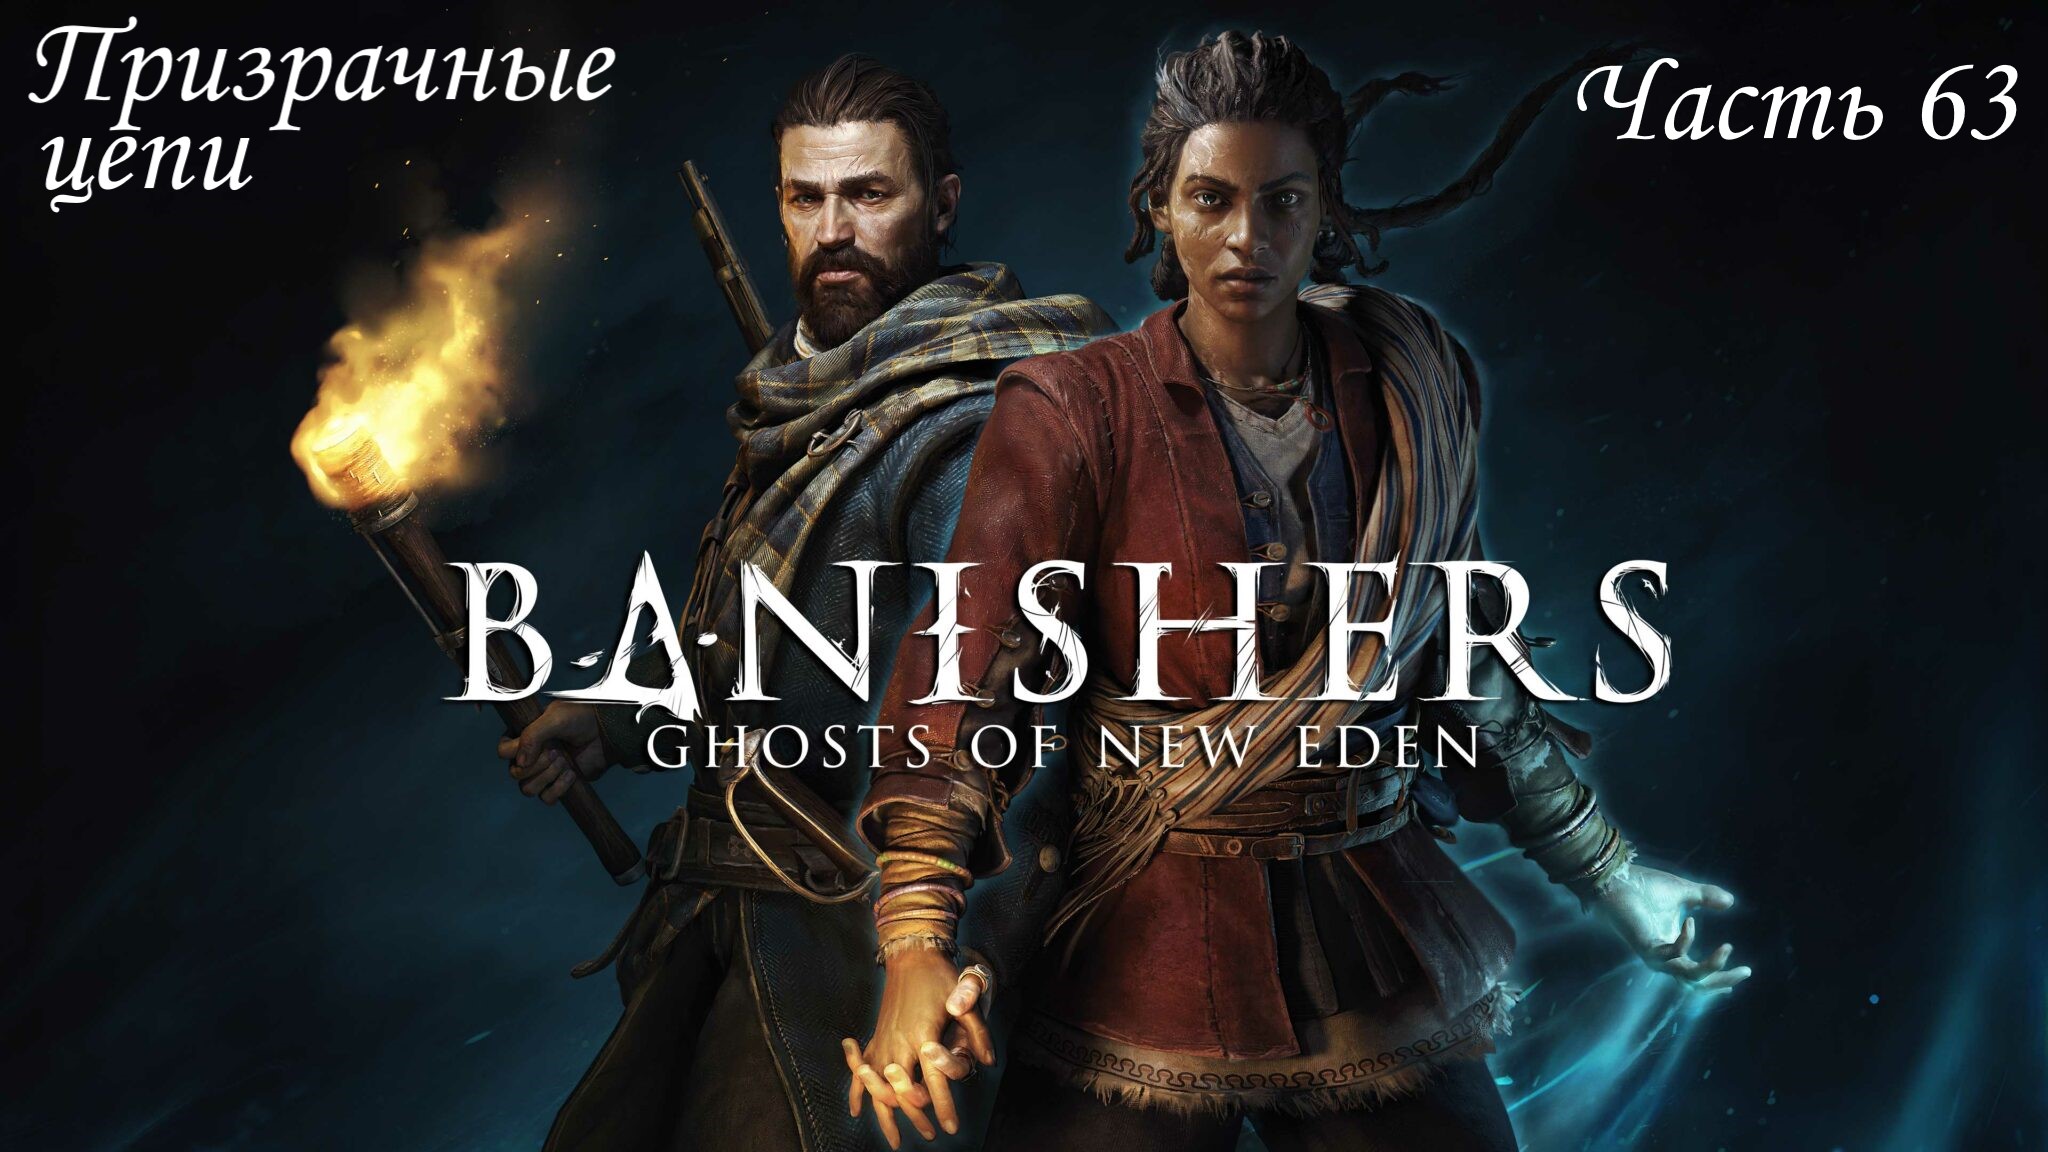 Прохождение Banishers: Ghosts of New Eden на русском - Часть 63. Призрачные цепи